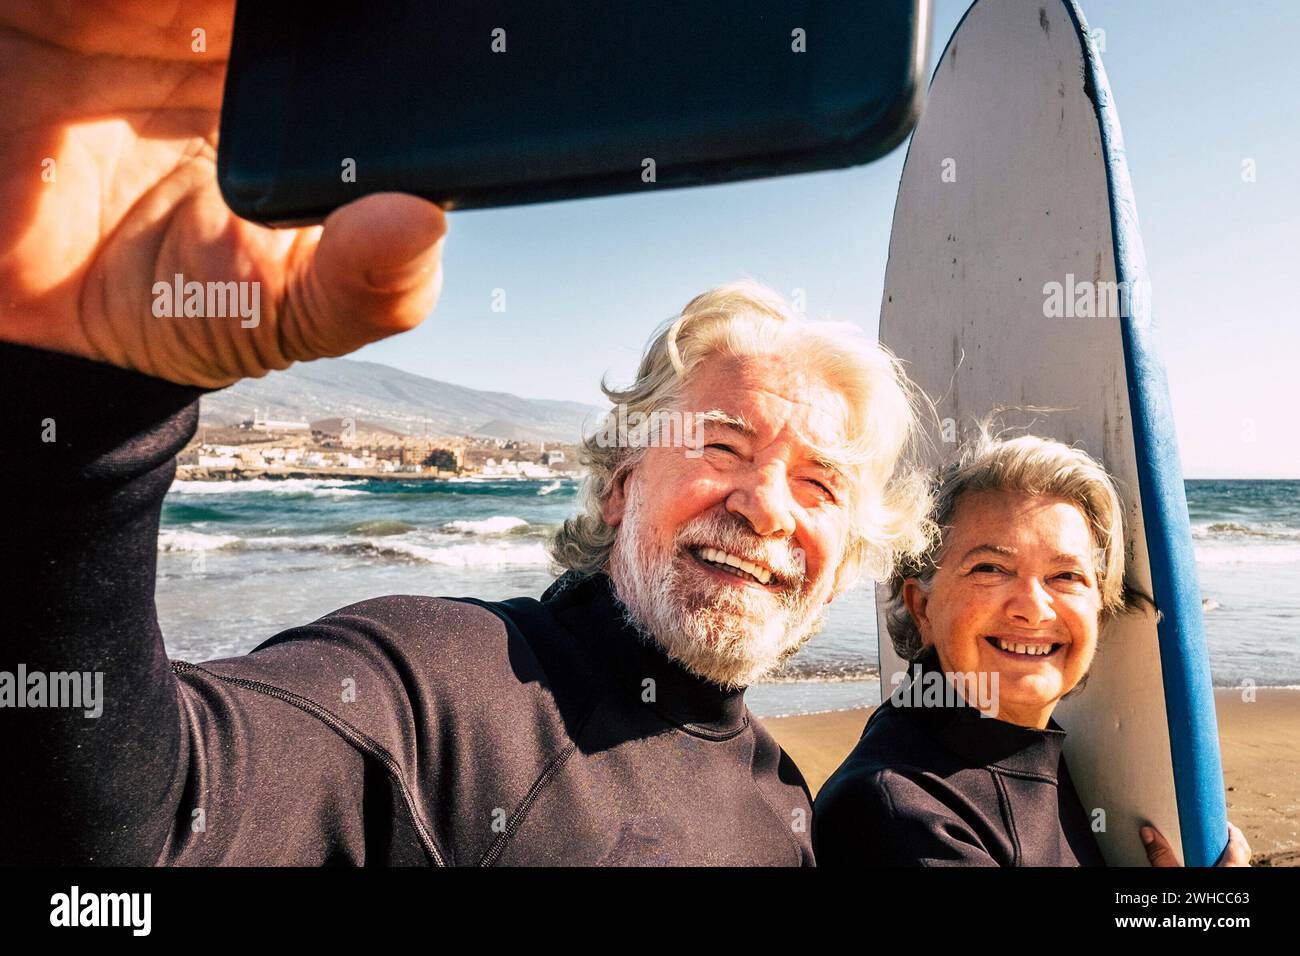 coppia degli anziani dei pensionati che prendono insieme un selfie al spiaggia con le loro mute e tavole da surf - persone mature imparare surf Foto Stock